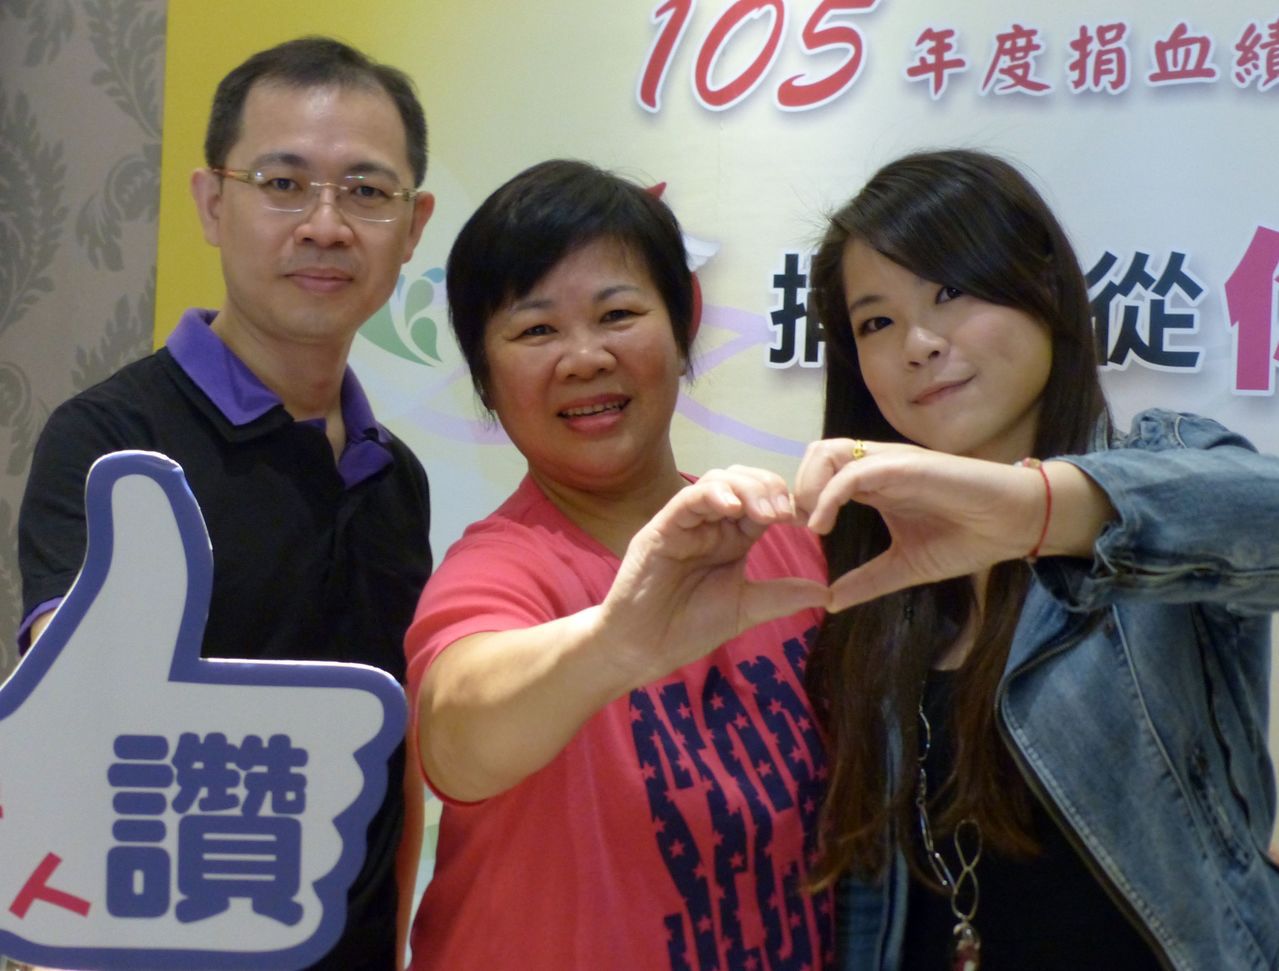 鄧羽媗（中）捐血的熱情，感動兒子翁偉桐（左）、女兒翁思縈（右），3人持續捐血，樂當熱血家族。